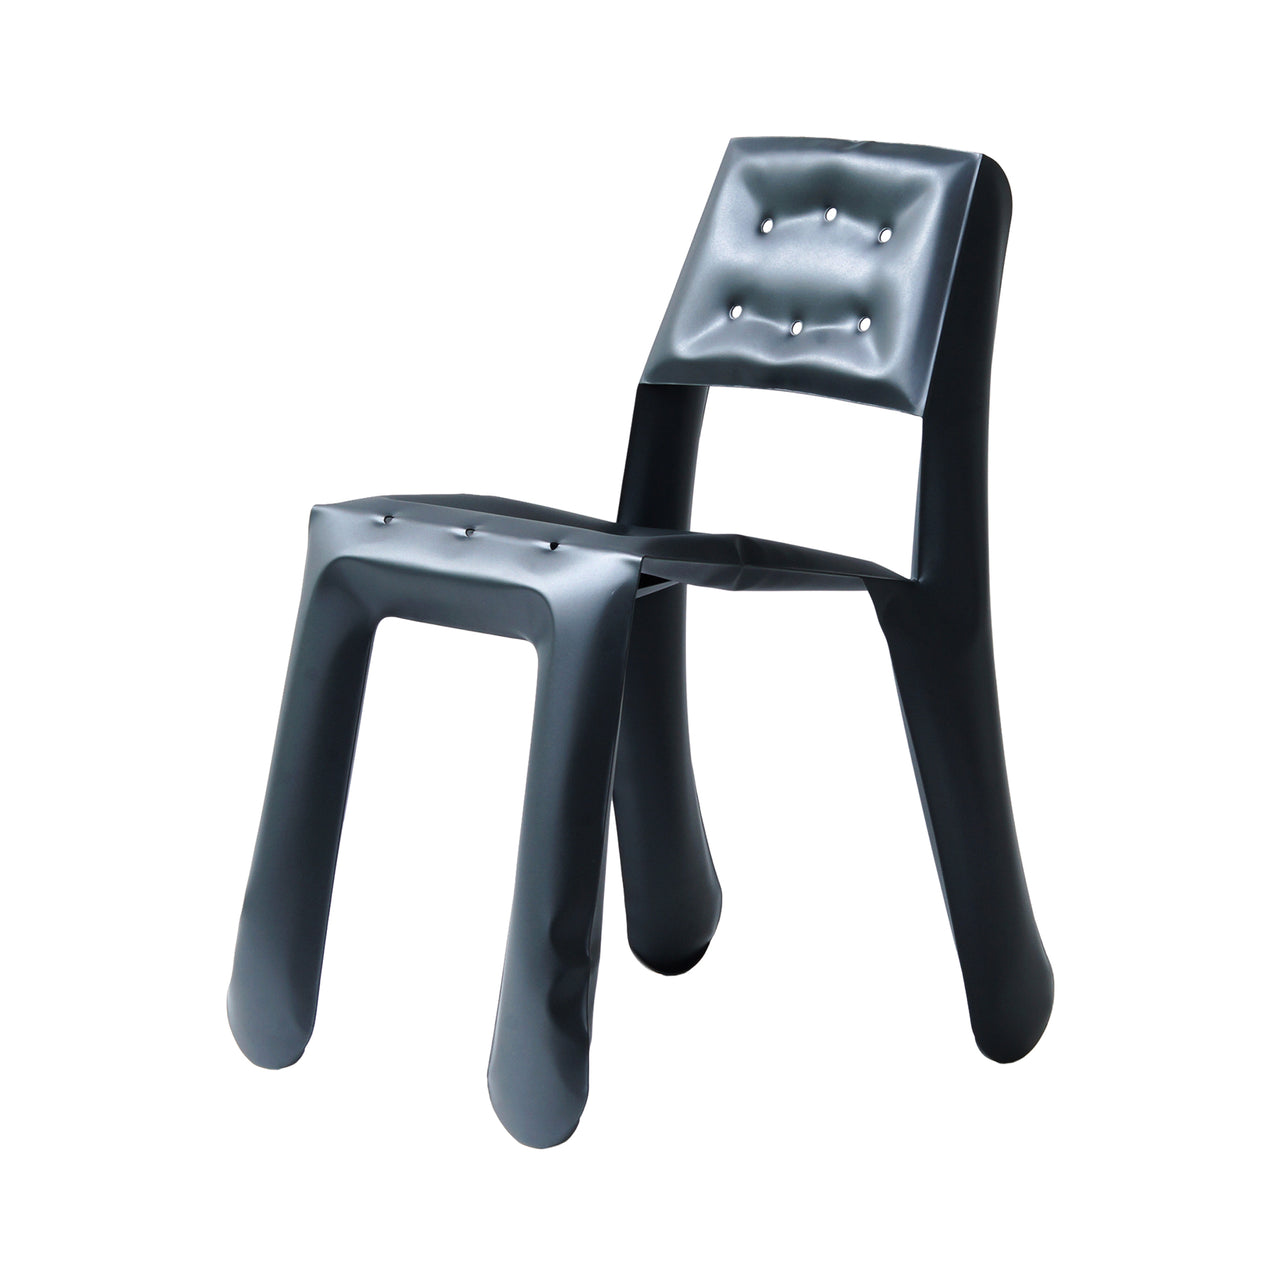 Chippensteel 0.5 Chair: Graphite Grey Carbon Steel